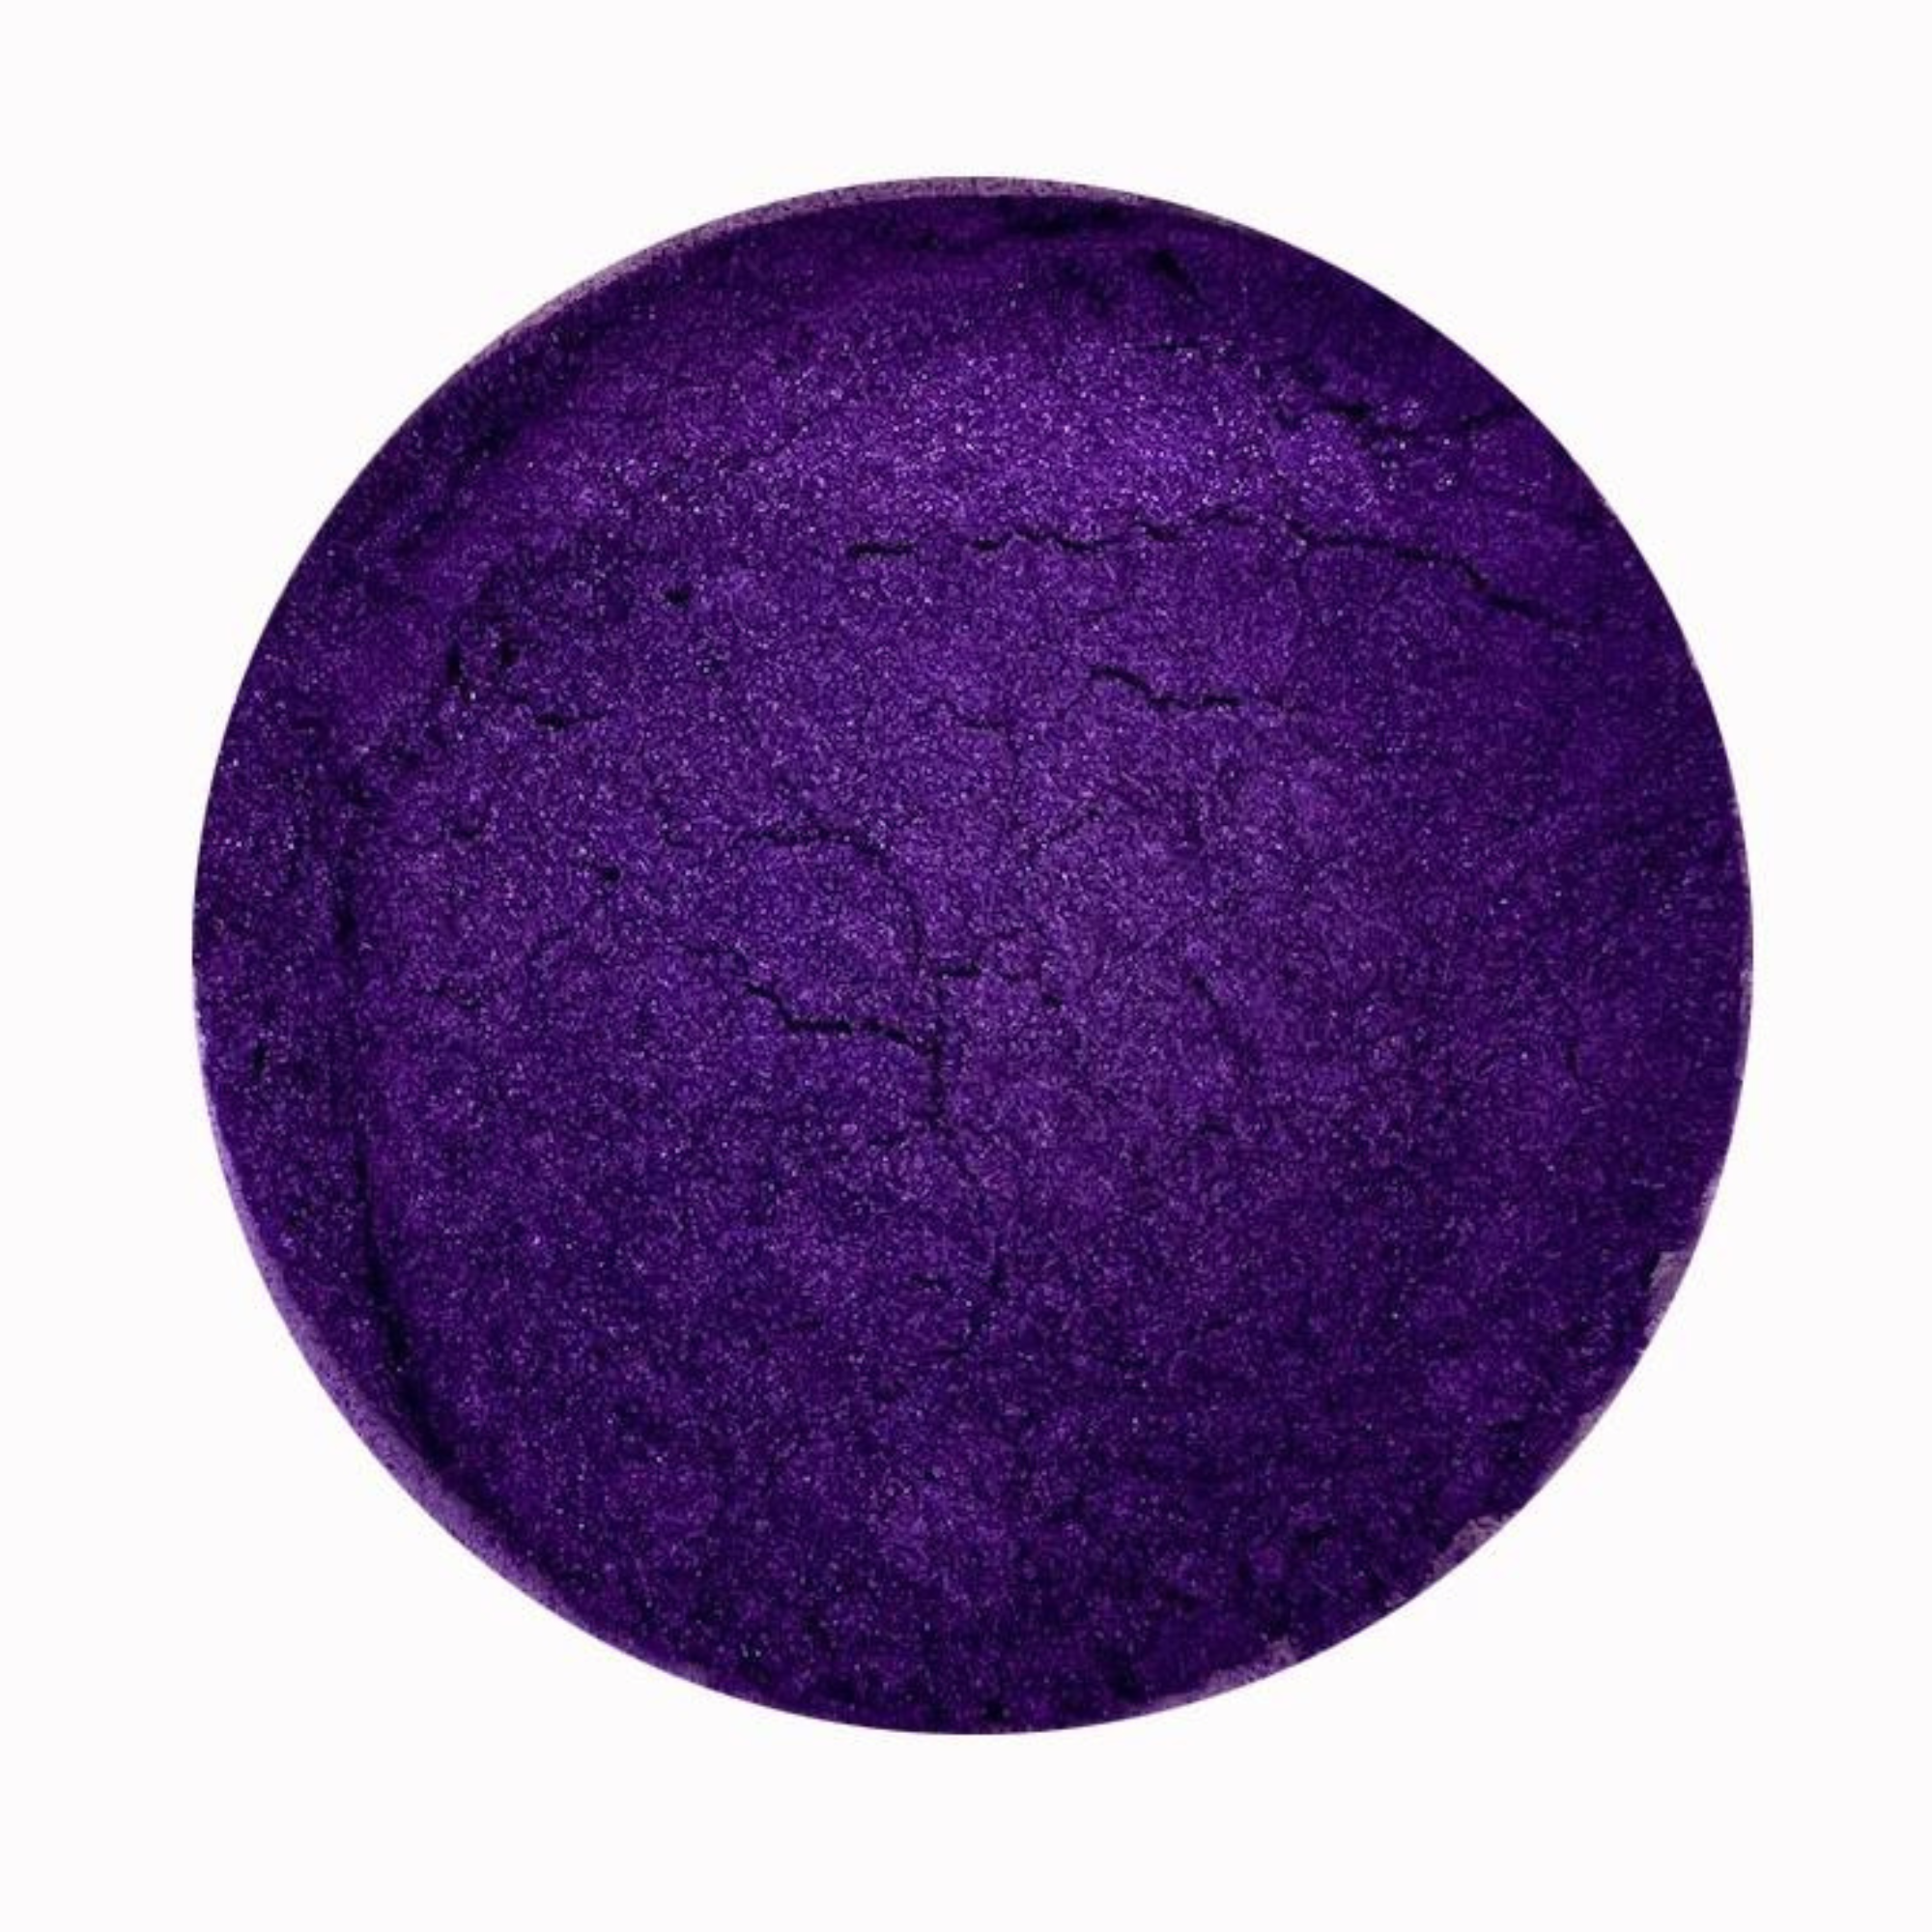 Colortricx Metallic Pigment Magic Violet 40ml